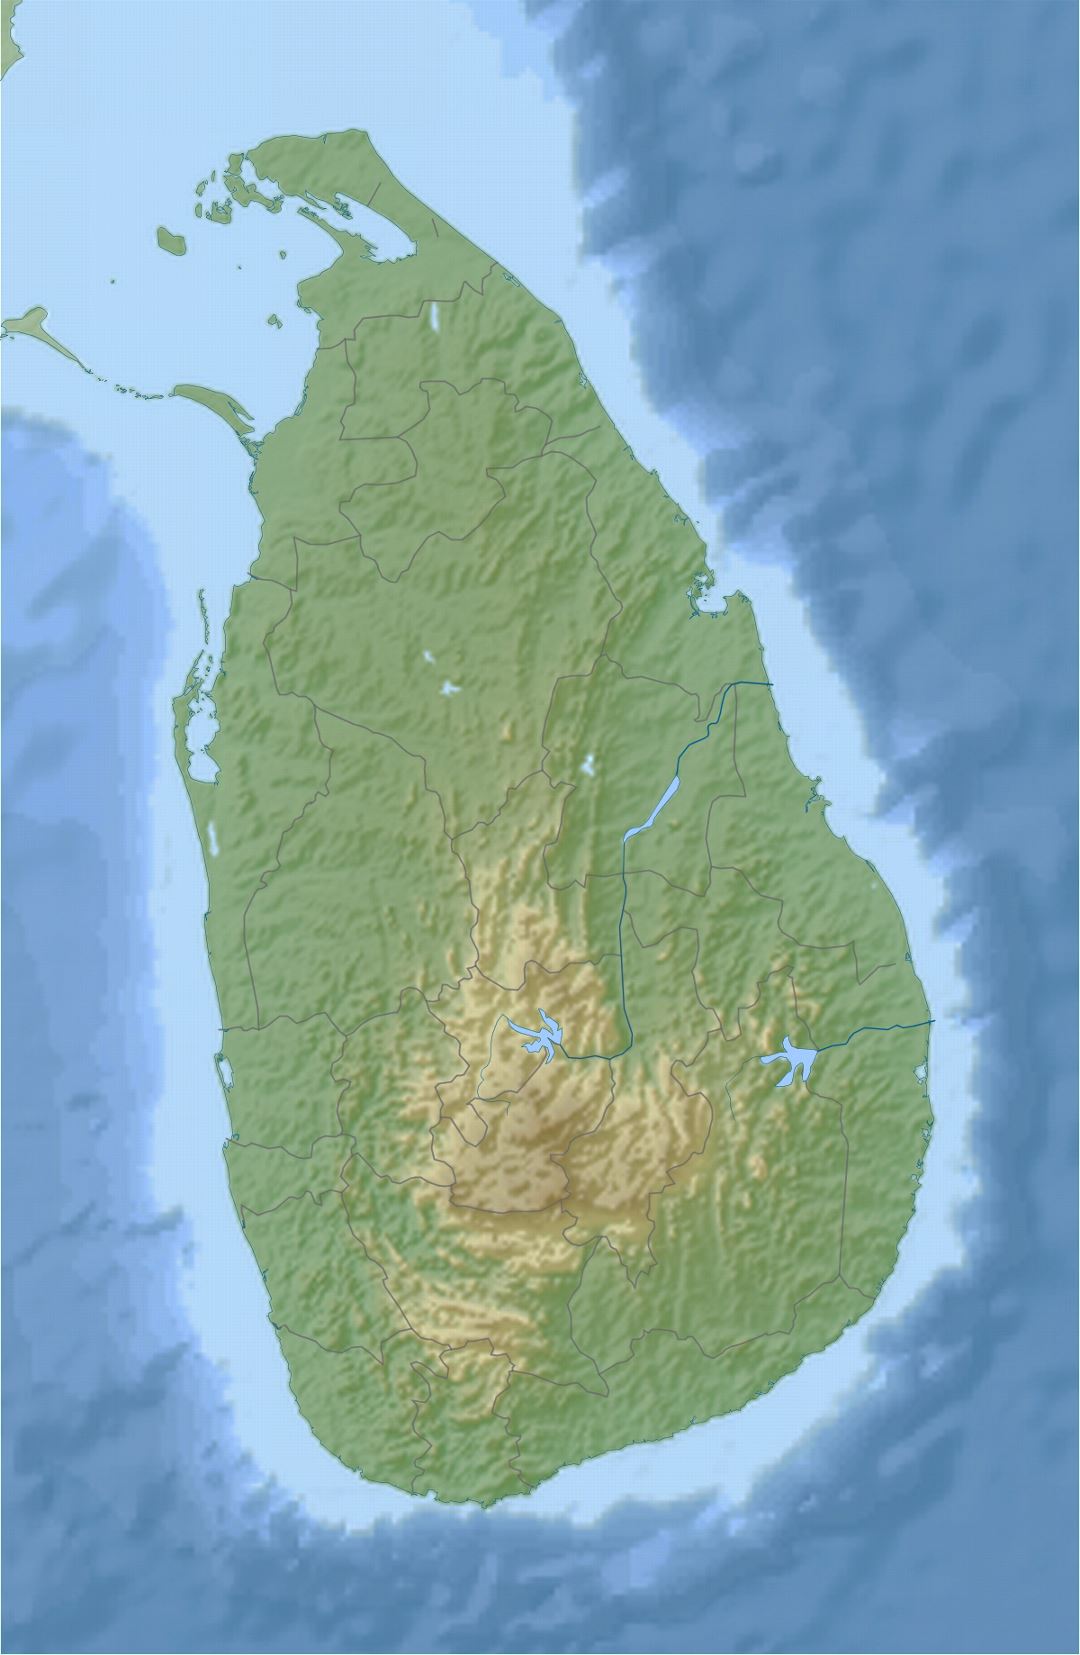 Detallado mapa en relieve de Sri Lanka